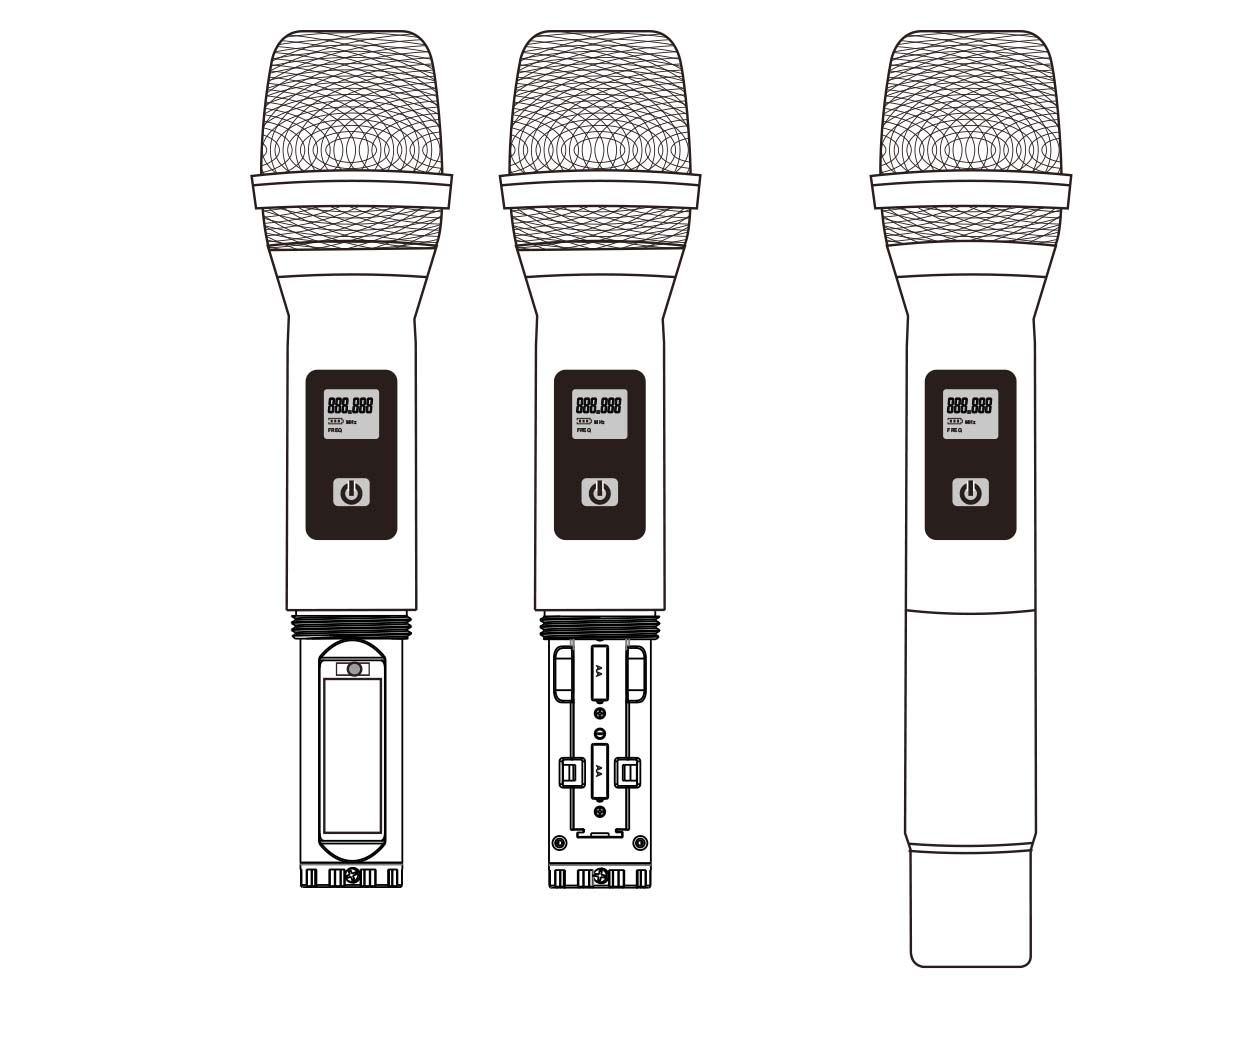 Ensemble double UHF avec 1 micro à main et 1 micro-cravate RONDSON  BE-5038/H-83/PT-10 : Performances sans fil supérieures pour u